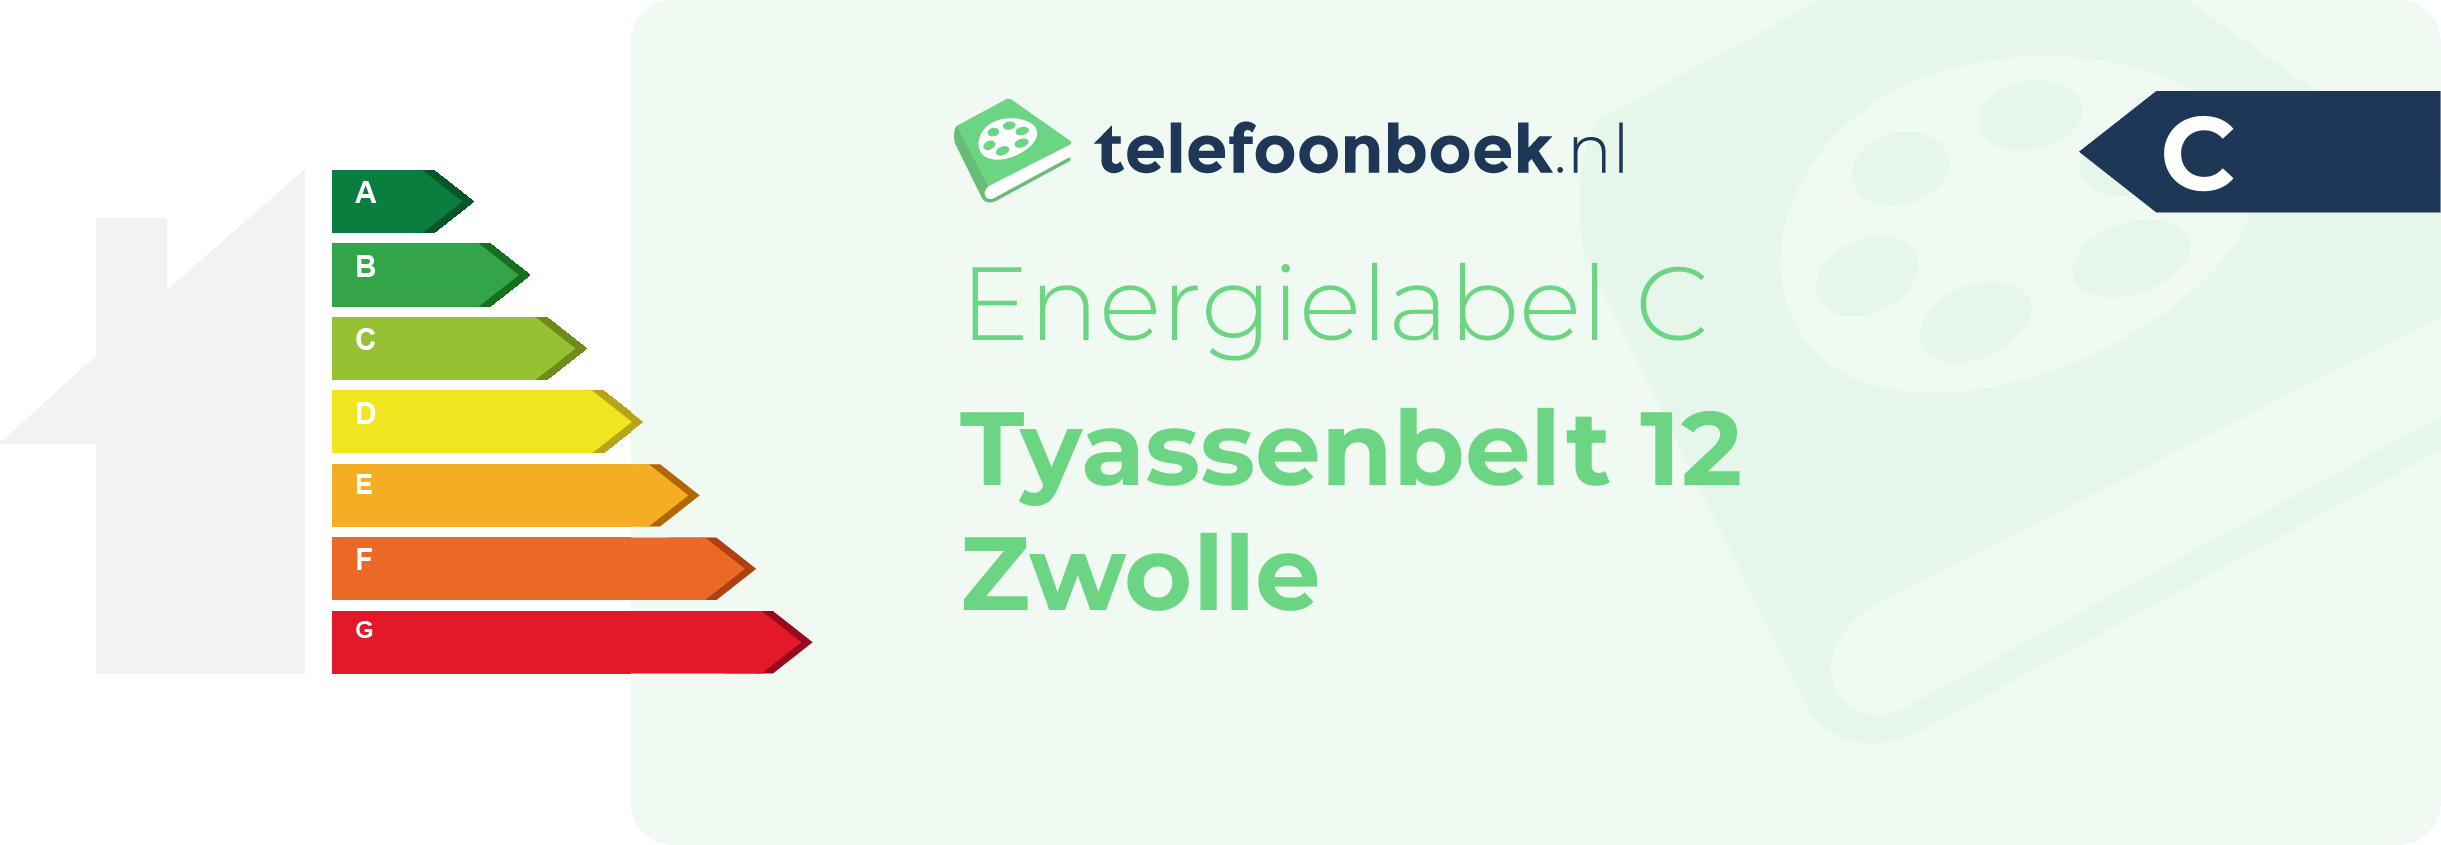 Energielabel Tyassenbelt 12 Zwolle